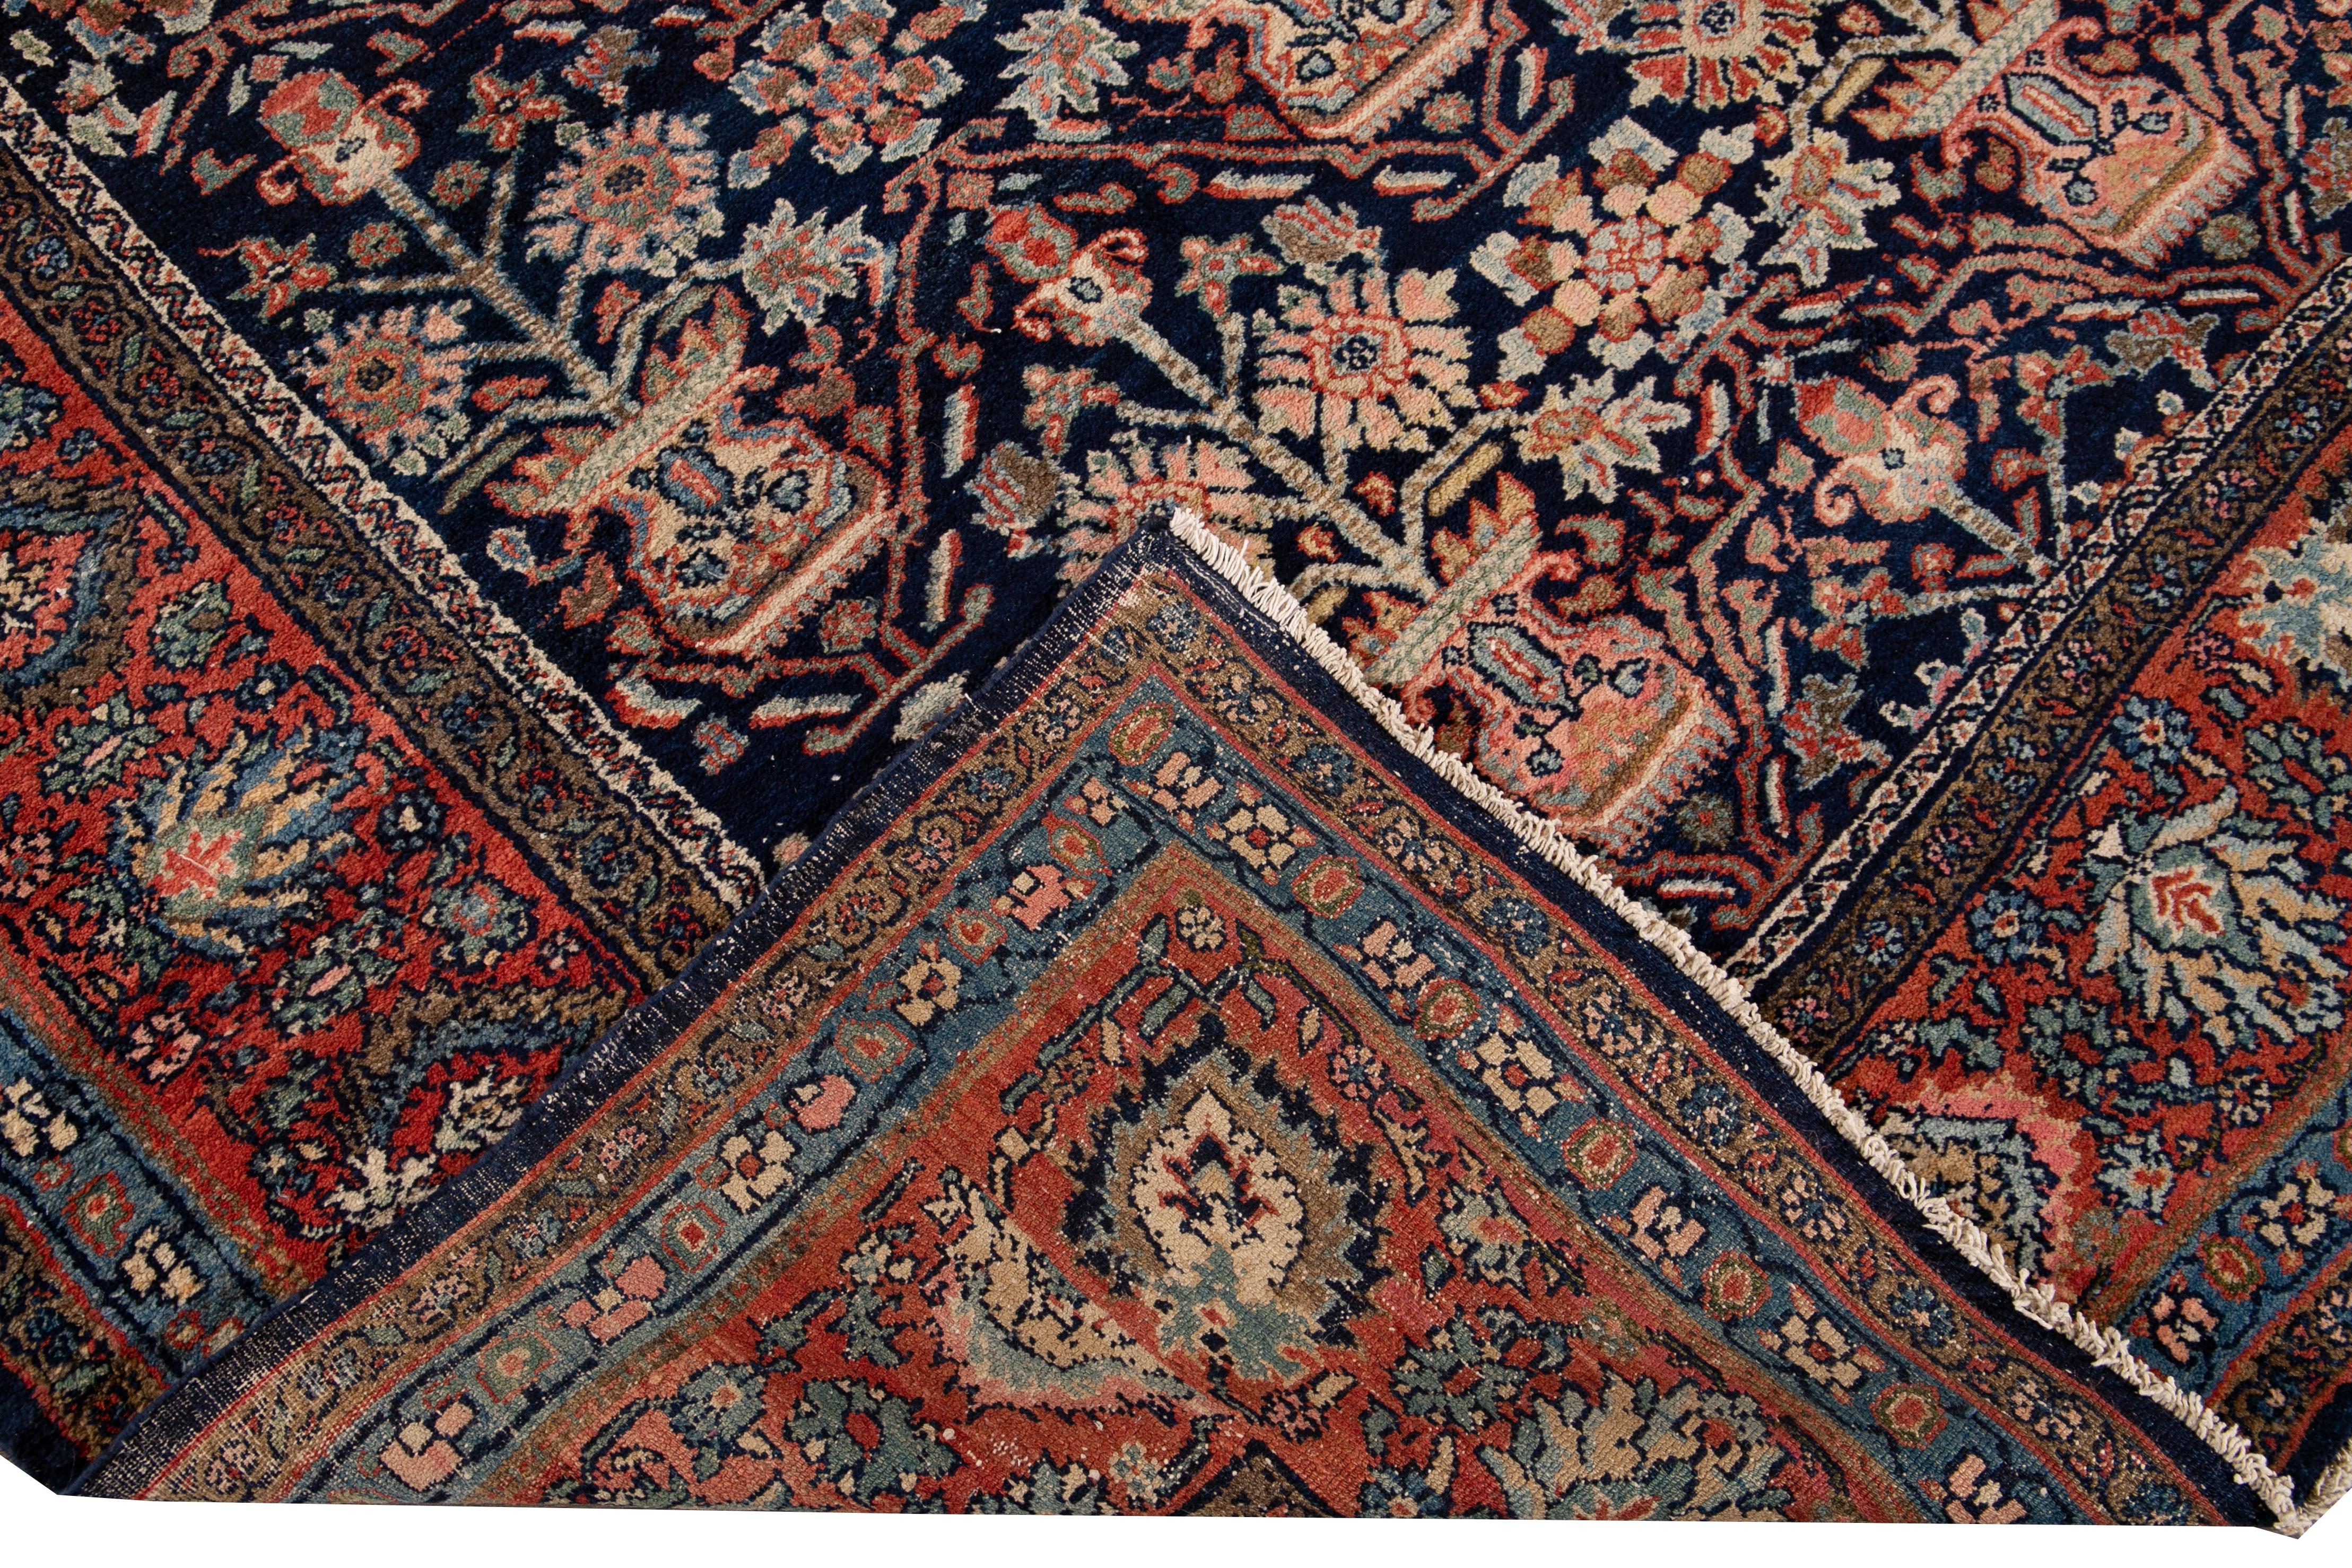 Schöne Vintage Persian Malayer handgeknüpften Wollteppich mit einem blauen Feld. Dieser Malayer-Teppich hat einen roten Rahmen und mehrfarbige Akzente in einem geometrischen Botanical-Muster.

Dieser Teppich misst: 9'3